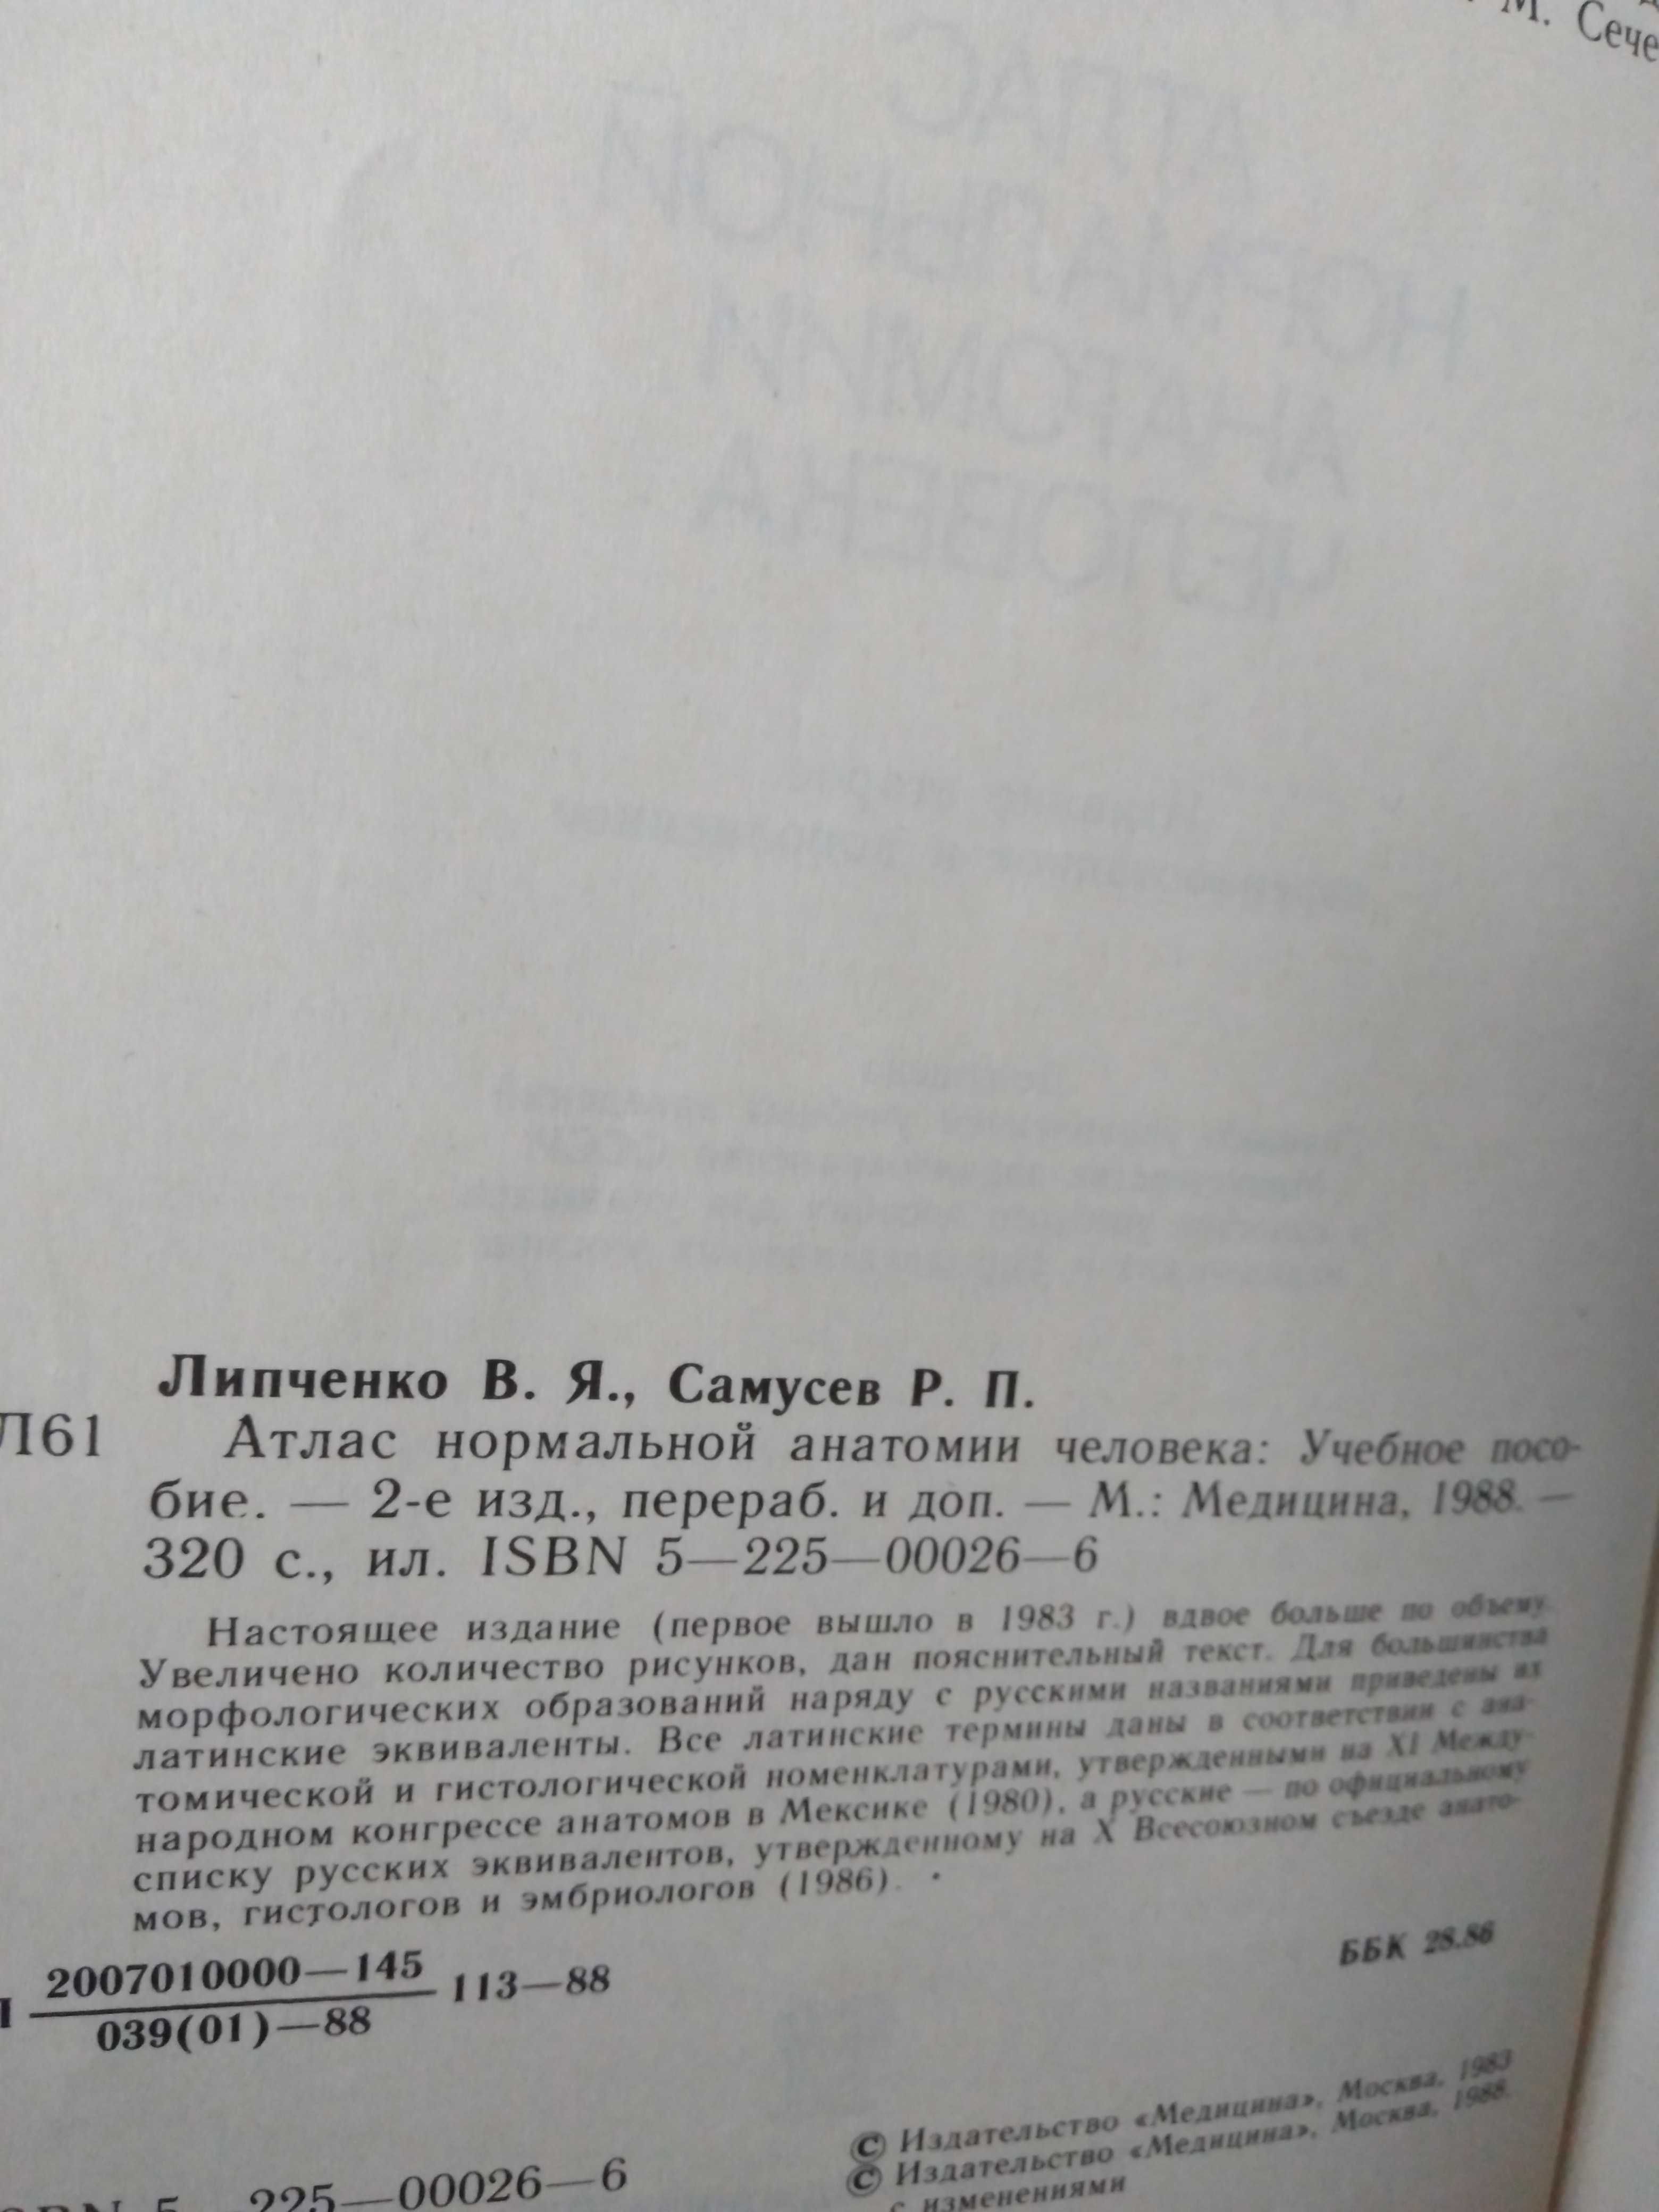 Атлас нормальной анатомии человека В.Липченко, Р.Самусев. 1988.